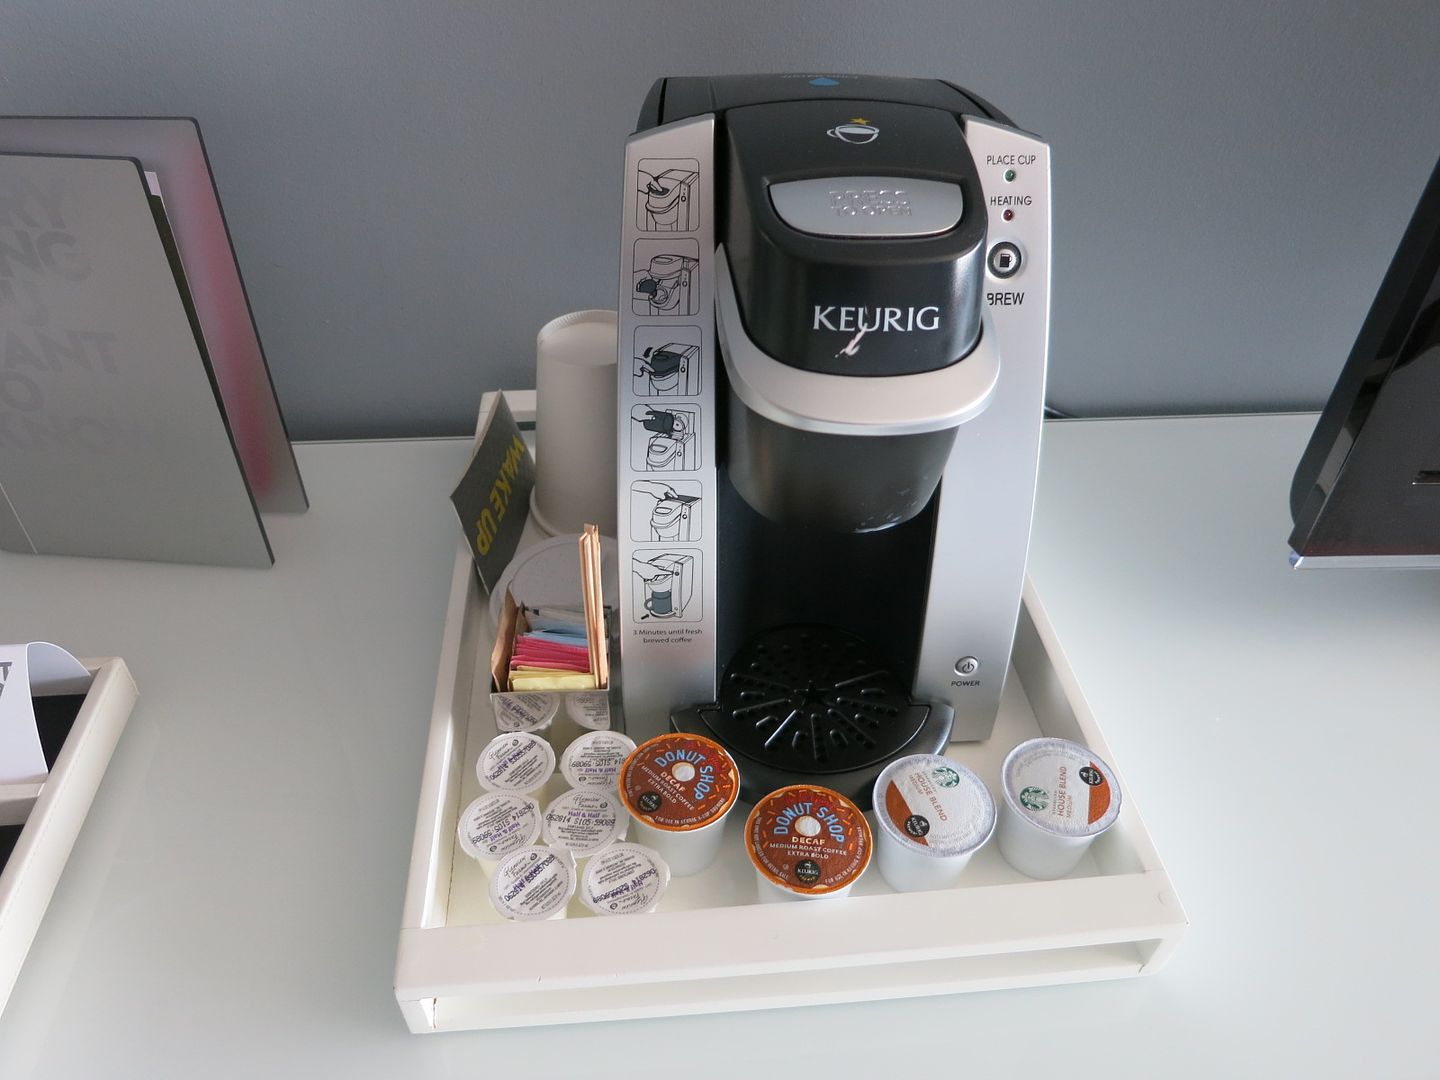 Best Keurig Coffee Maker Reddit Keurig K Classic Save 50 On This Timeless Single Serve Coffee